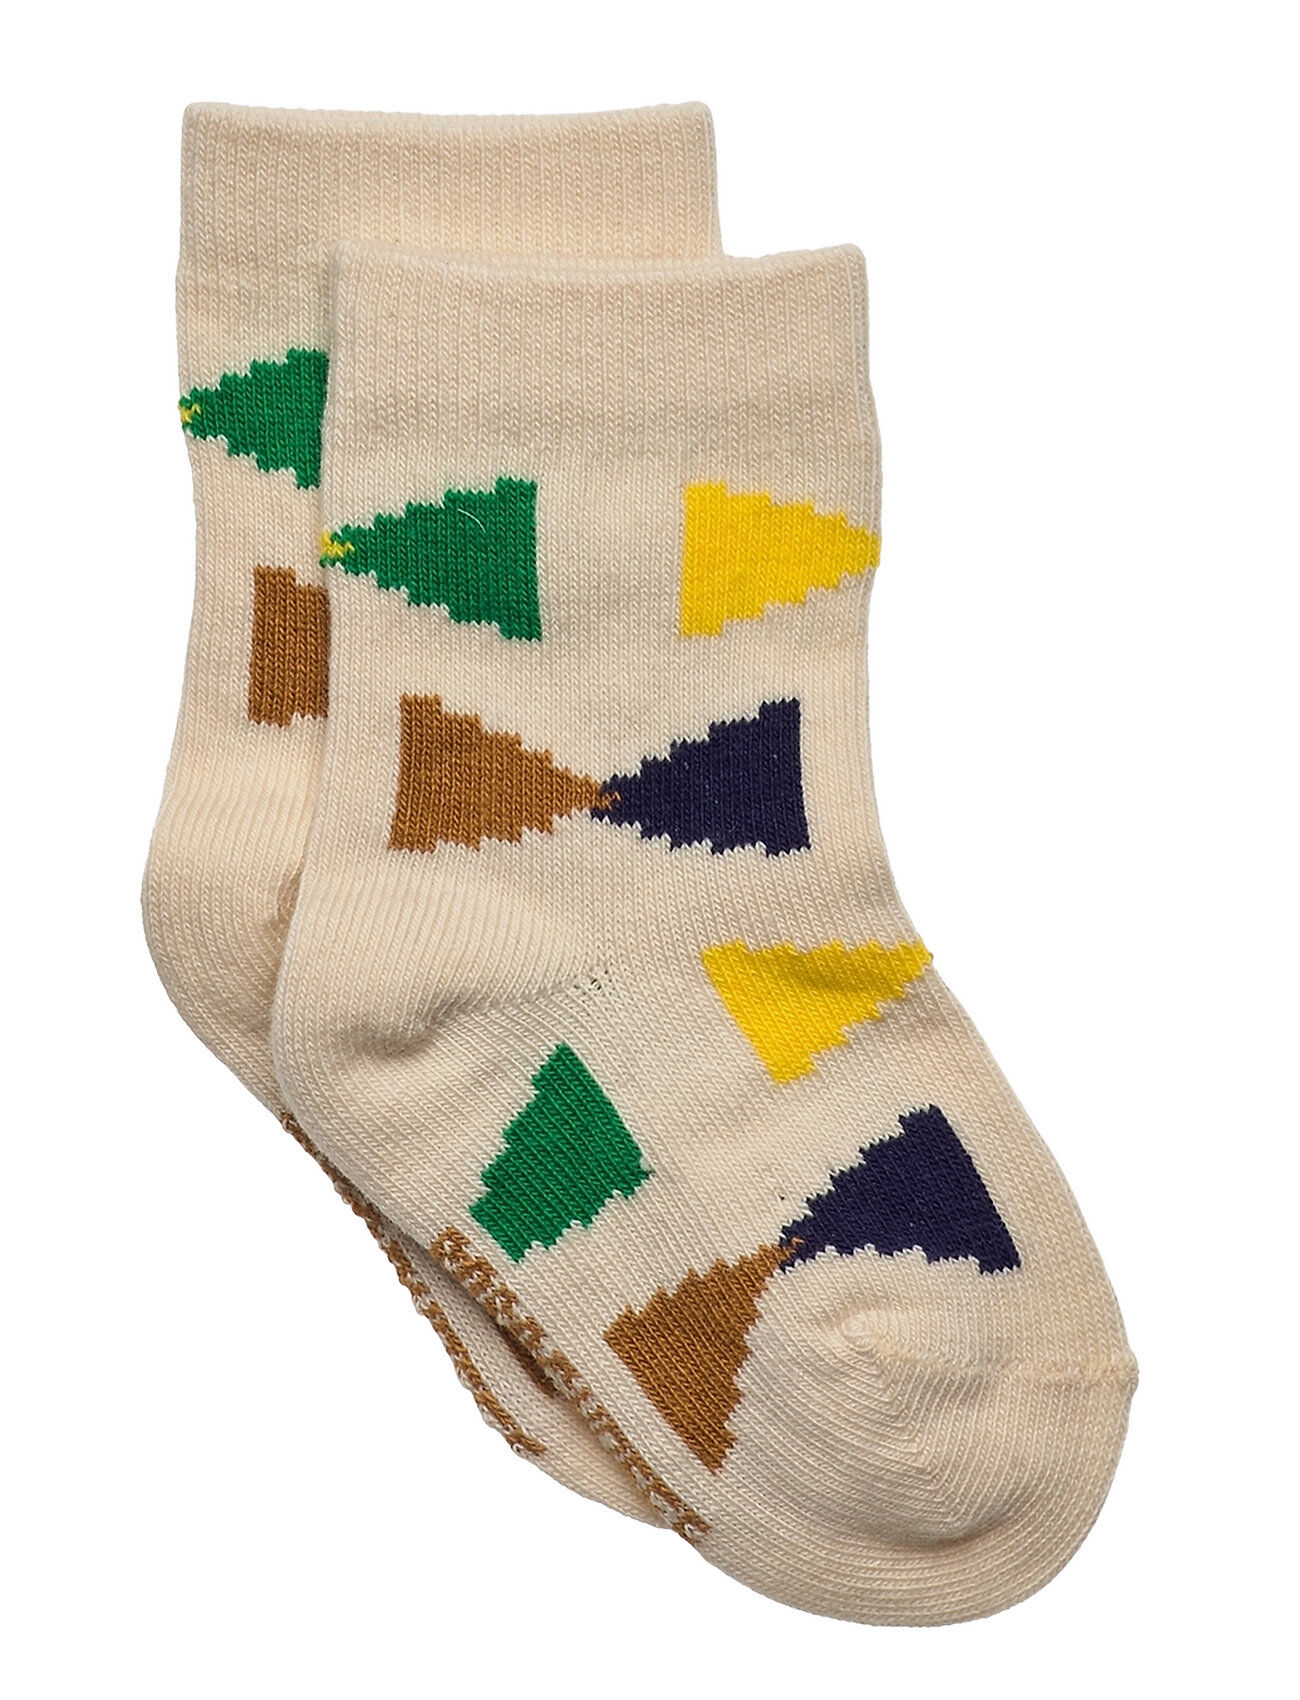 Bobo Choses Ecru Geometric Baby Socks Socks & Tights Socks Multi/mønstret Bobo Choses